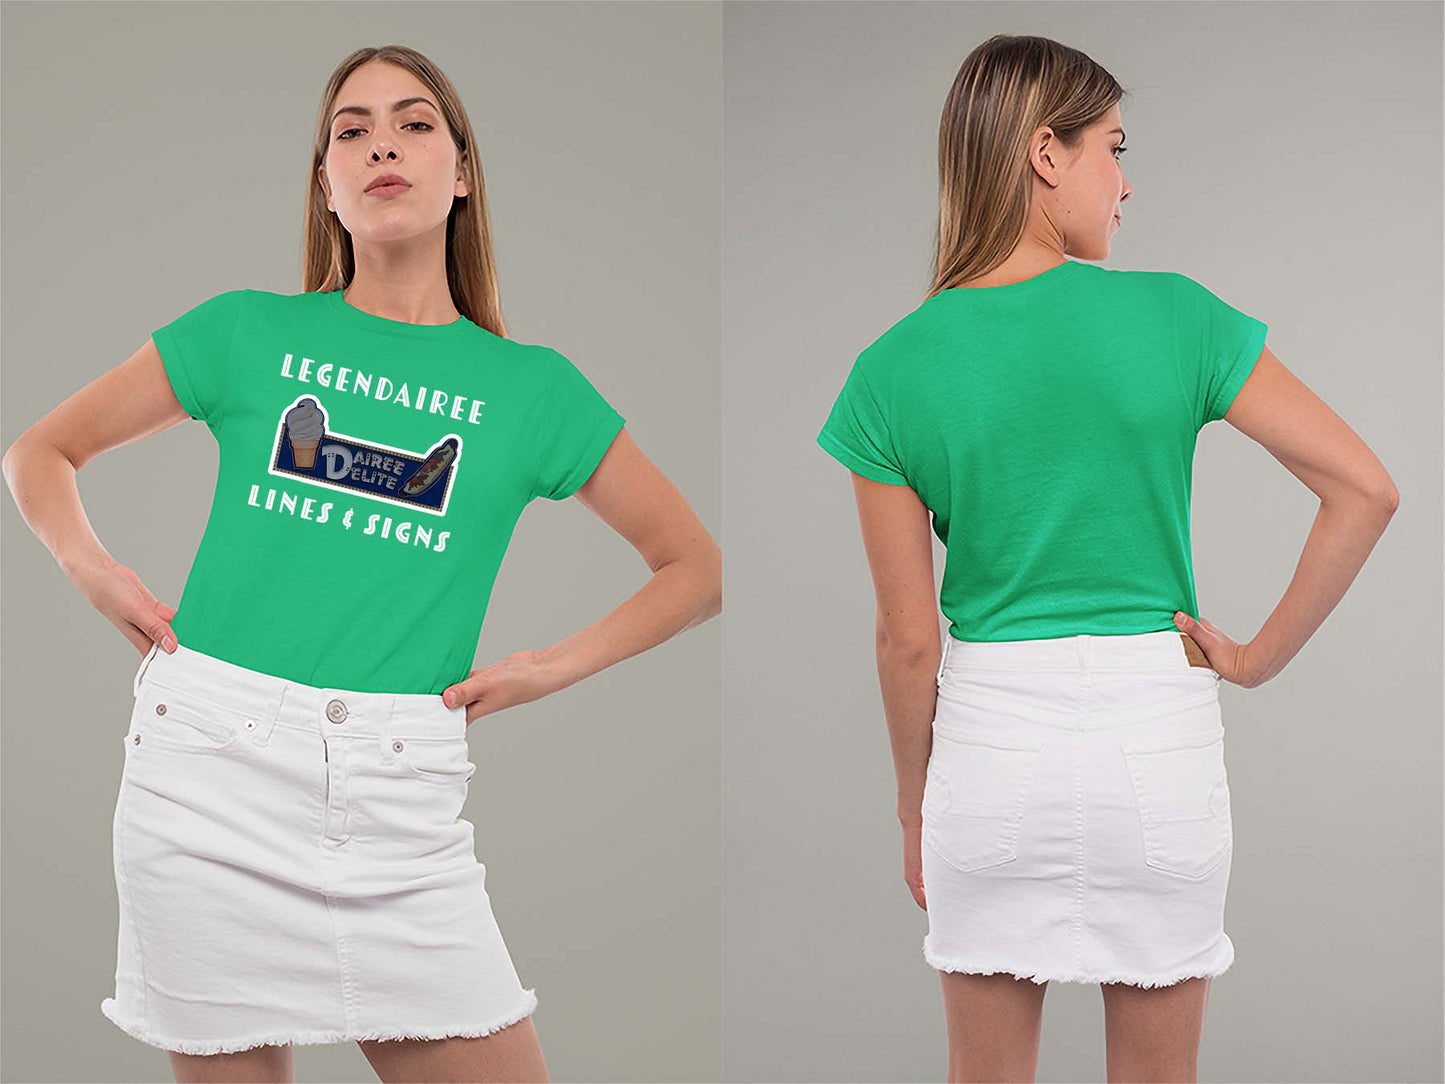 Legendairee Ladies Crew (Round) Neck Shirt Small Irish Green